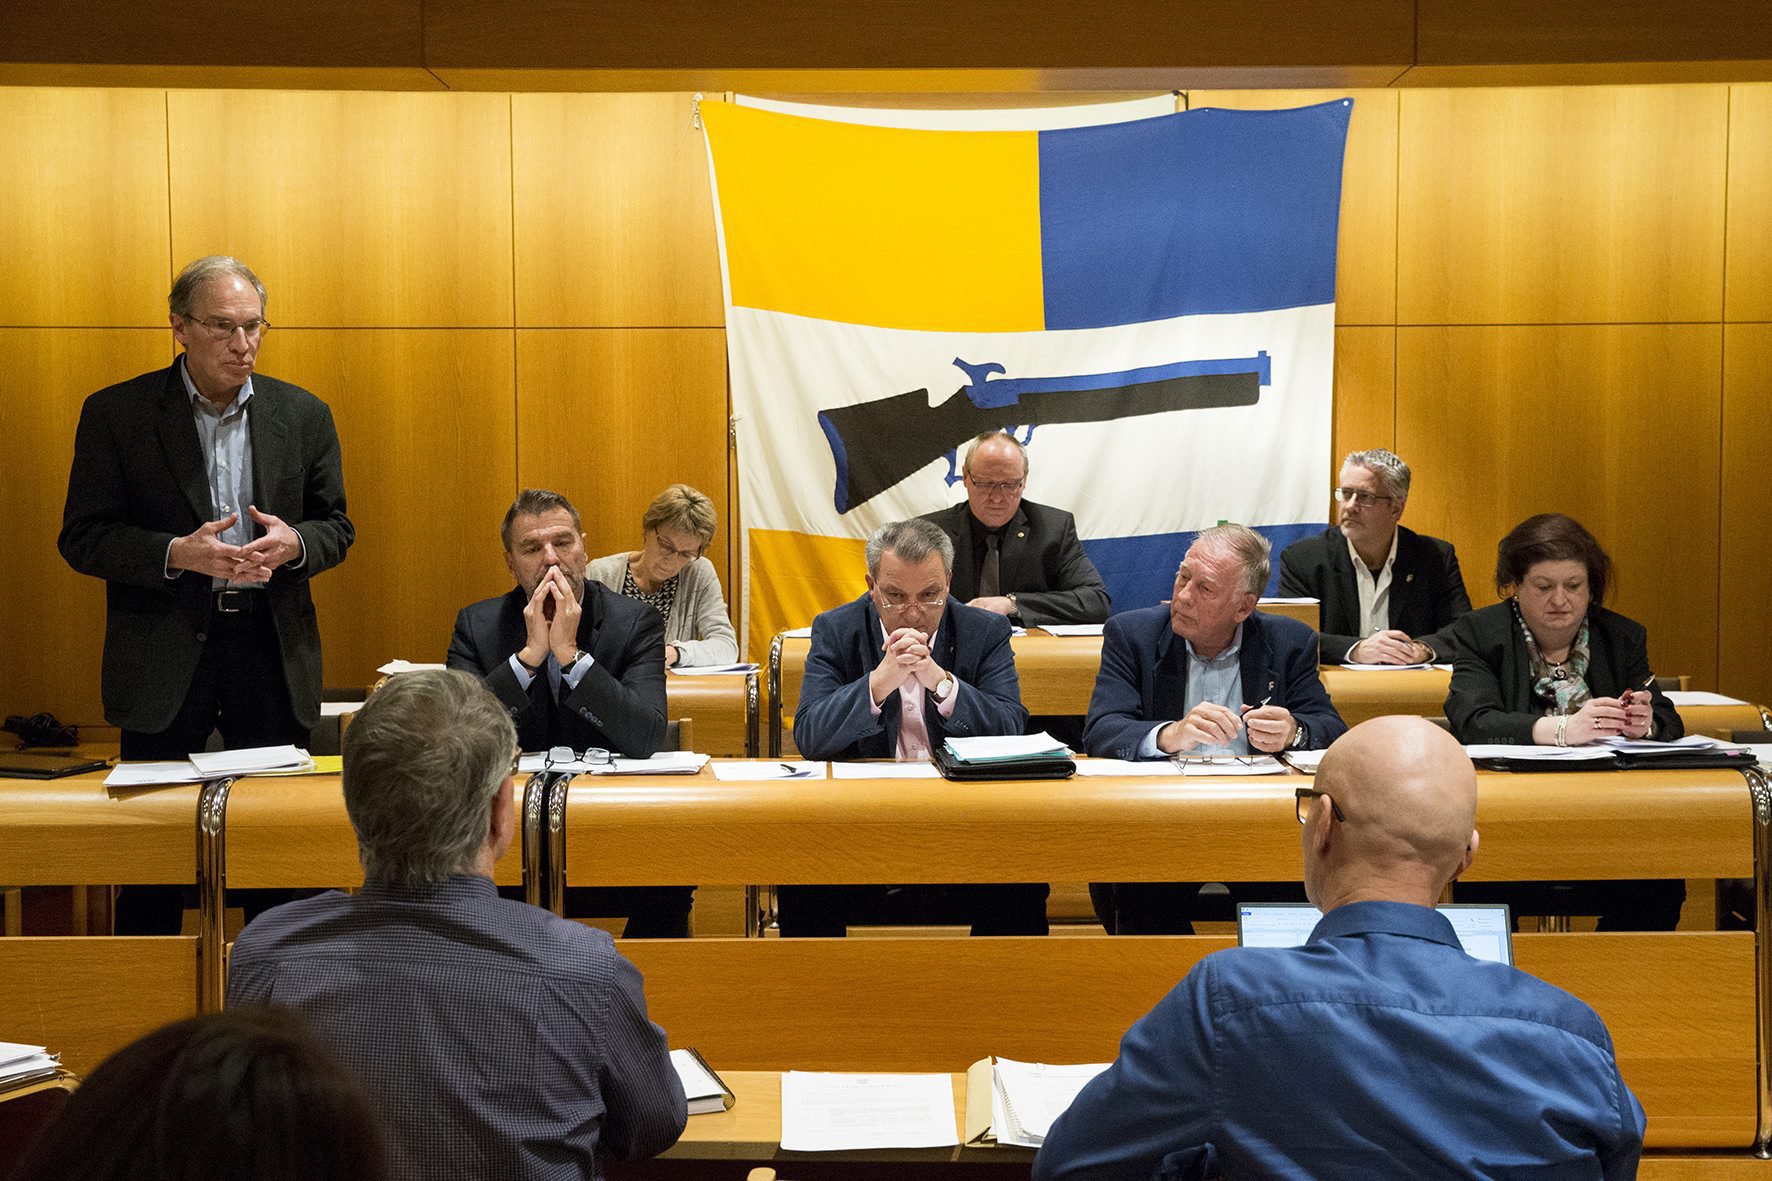 Le Conseil communal de Peseux est actuellement composé d'un vert'libéral (Philipp Niedermann, debout, à gauche) et de quatre libéraux-radicaux (de g. à dr., Rolf Schneider, Michel Rossi, Roger Poirier et Nicole Mühlethaler).